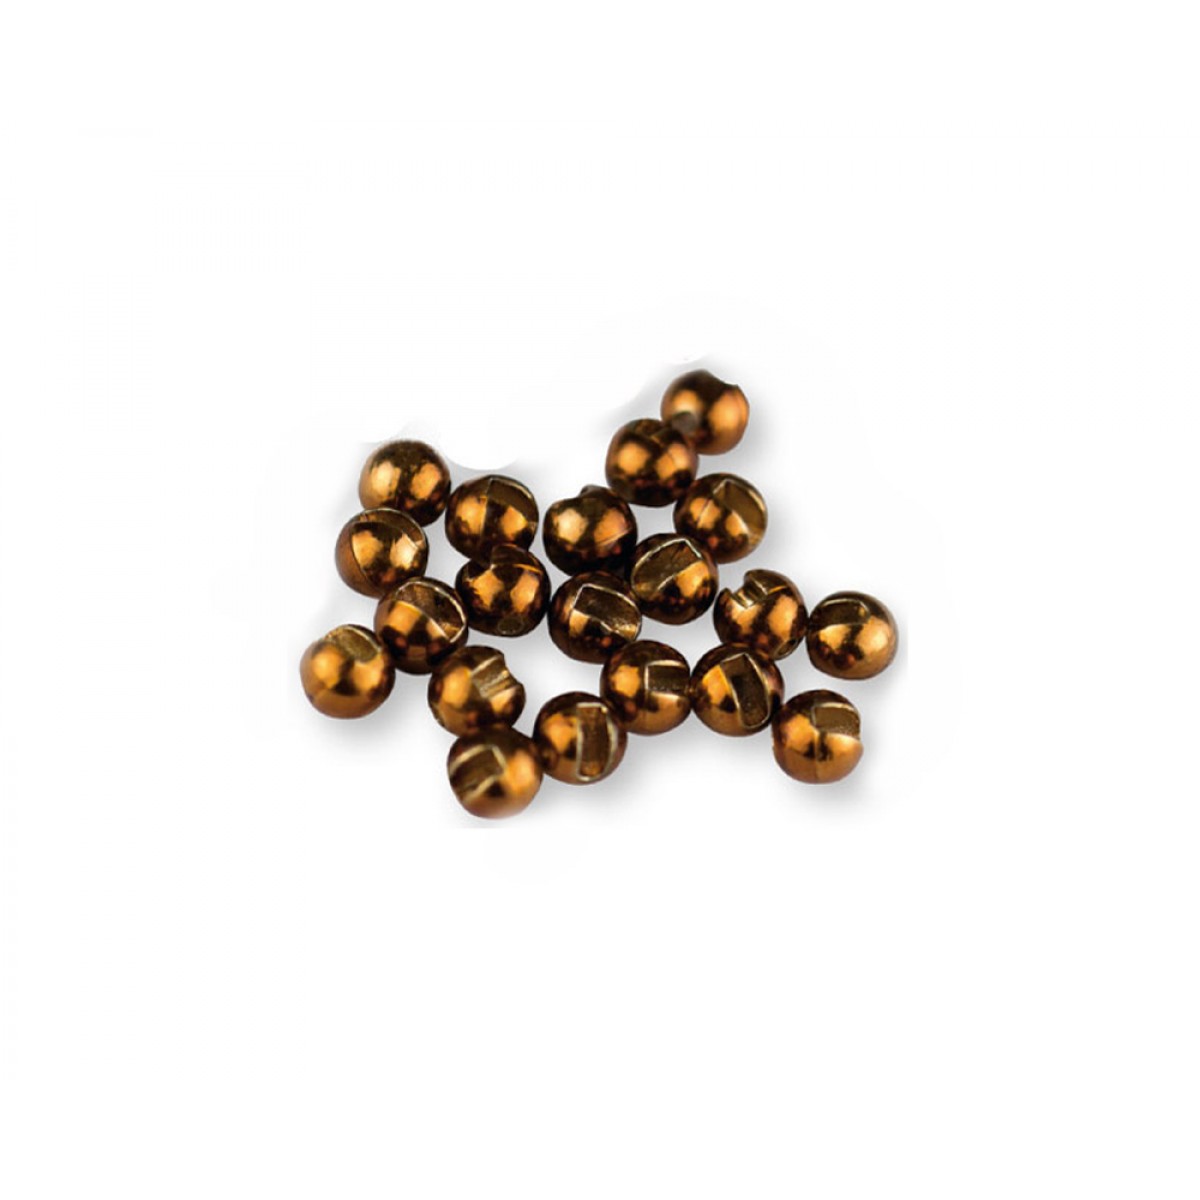 Tungsten Perlen (bronce)